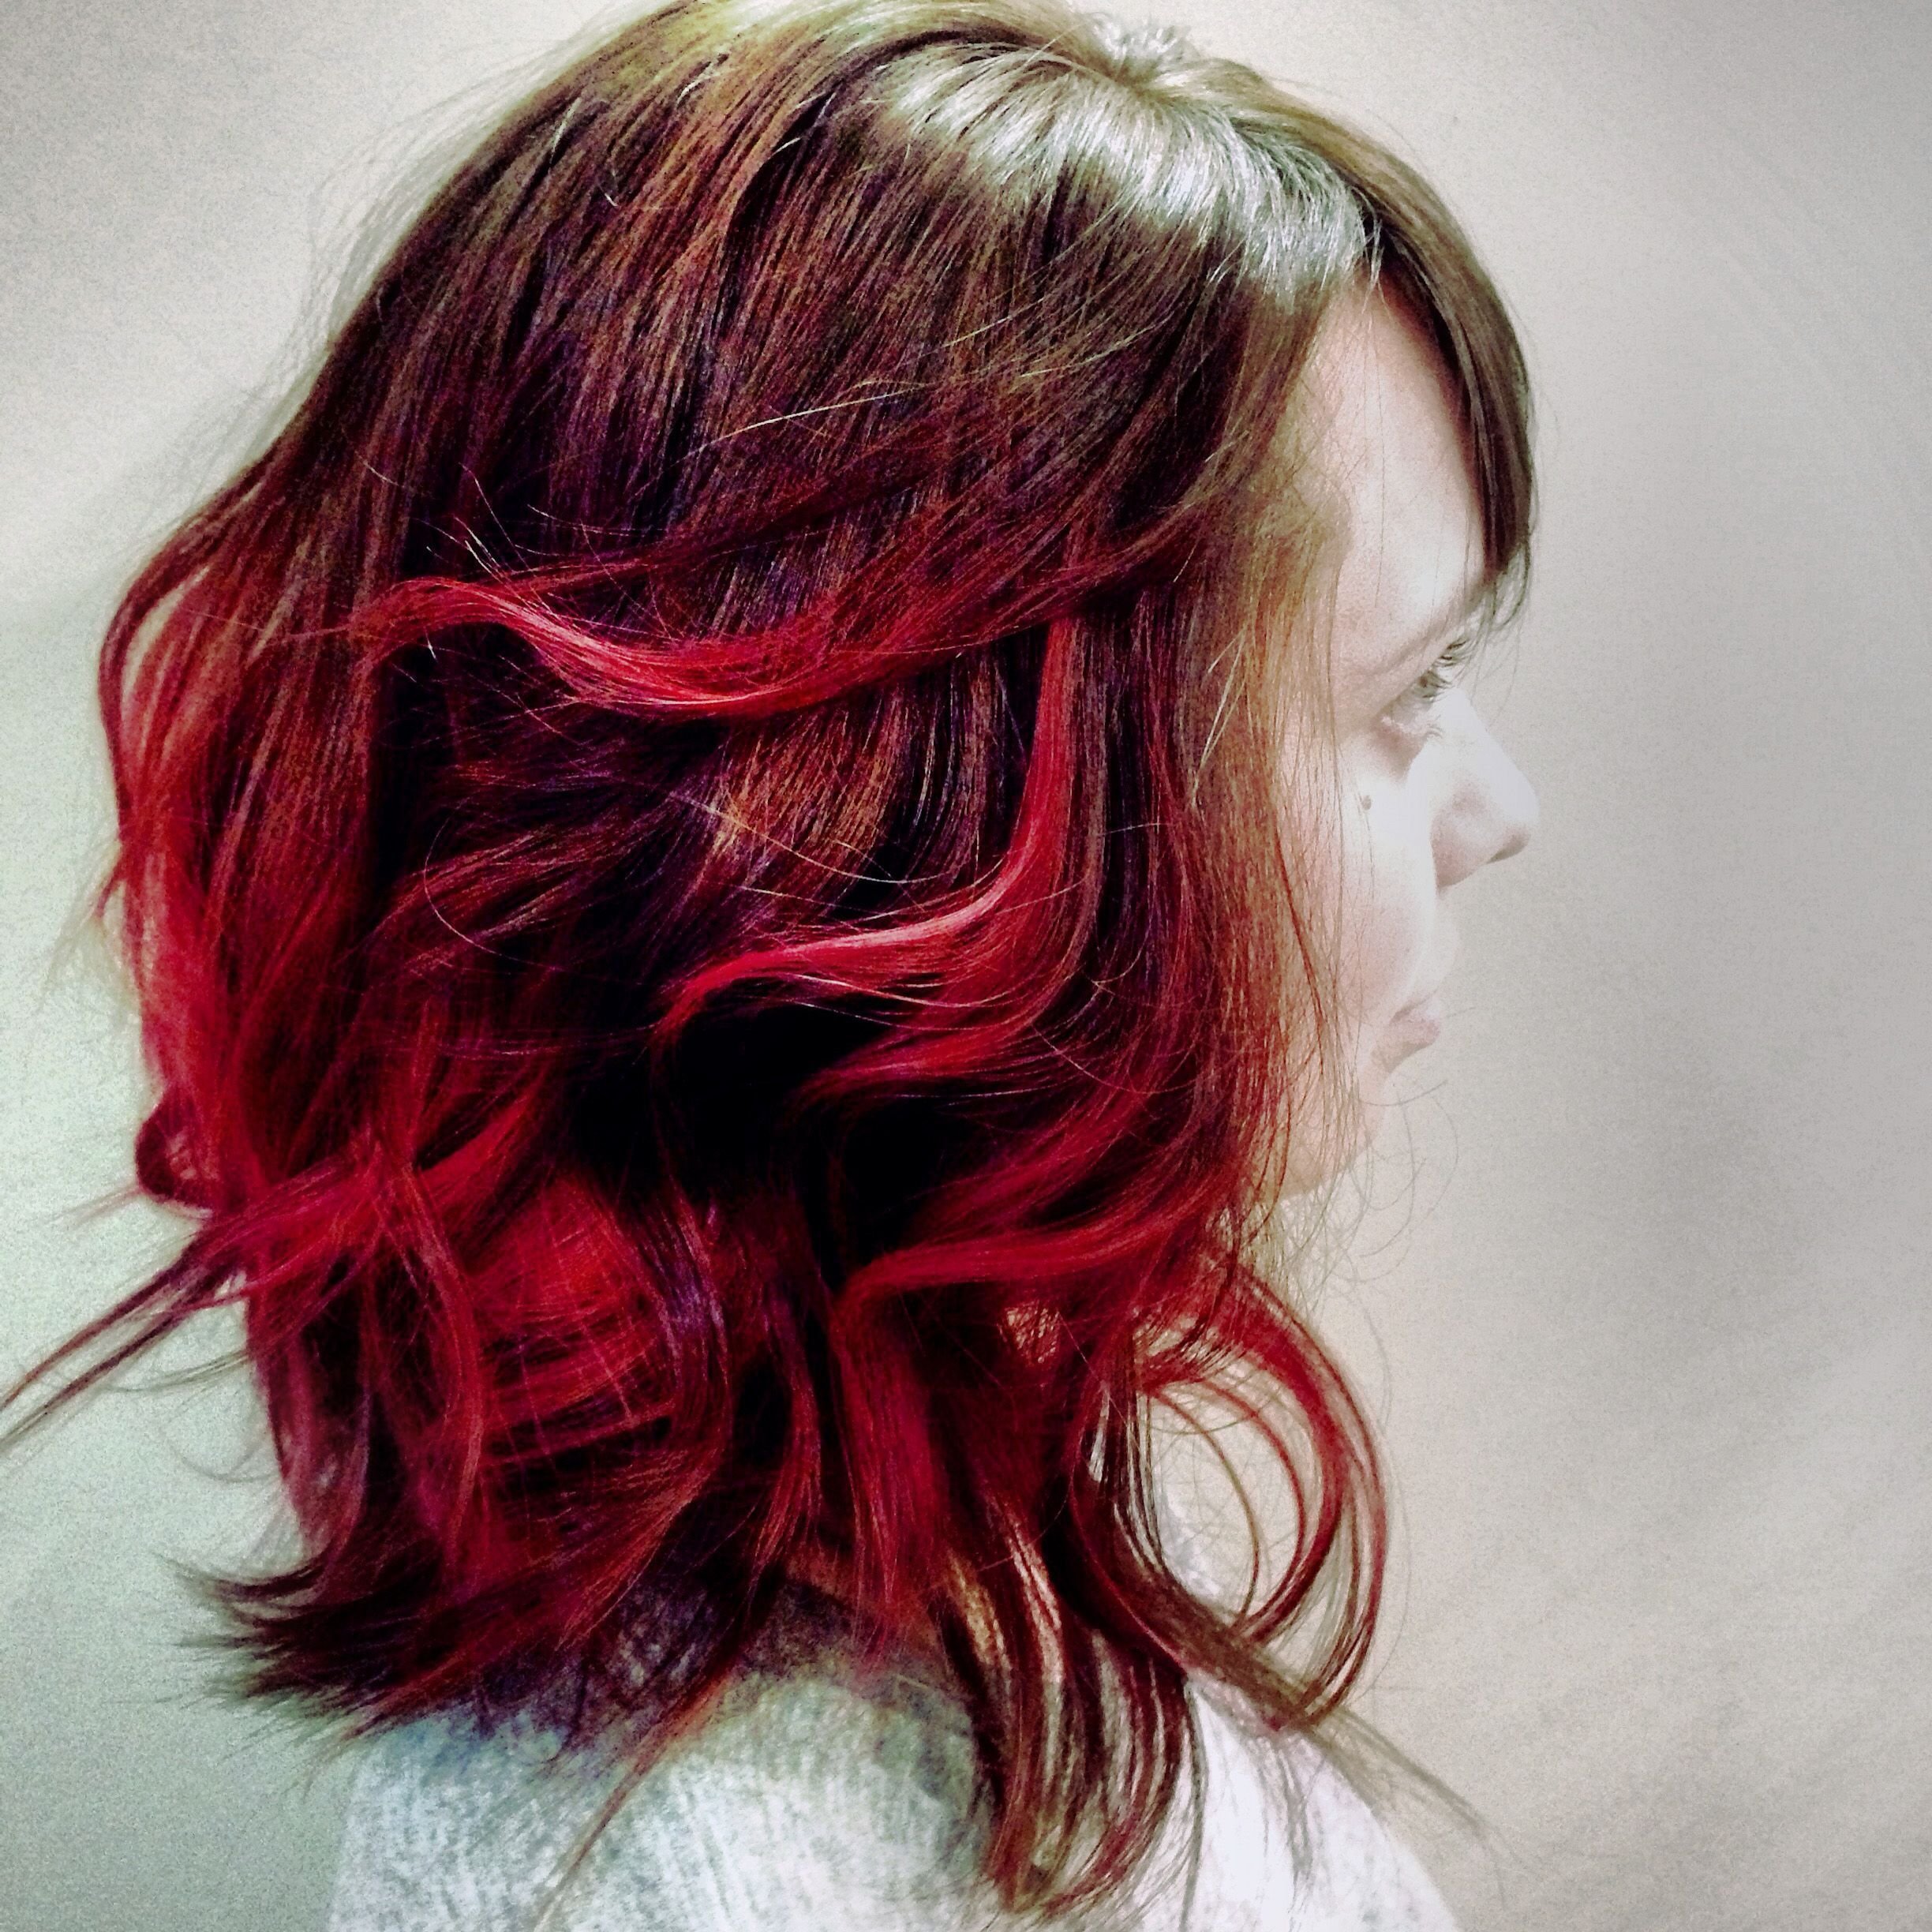 Ната красно. Мелирование на красные волосы. Мелирование красным цветом на темные волосы. Мелирование красным цветом на русые волосы. Красное мелирование на темные волосы.